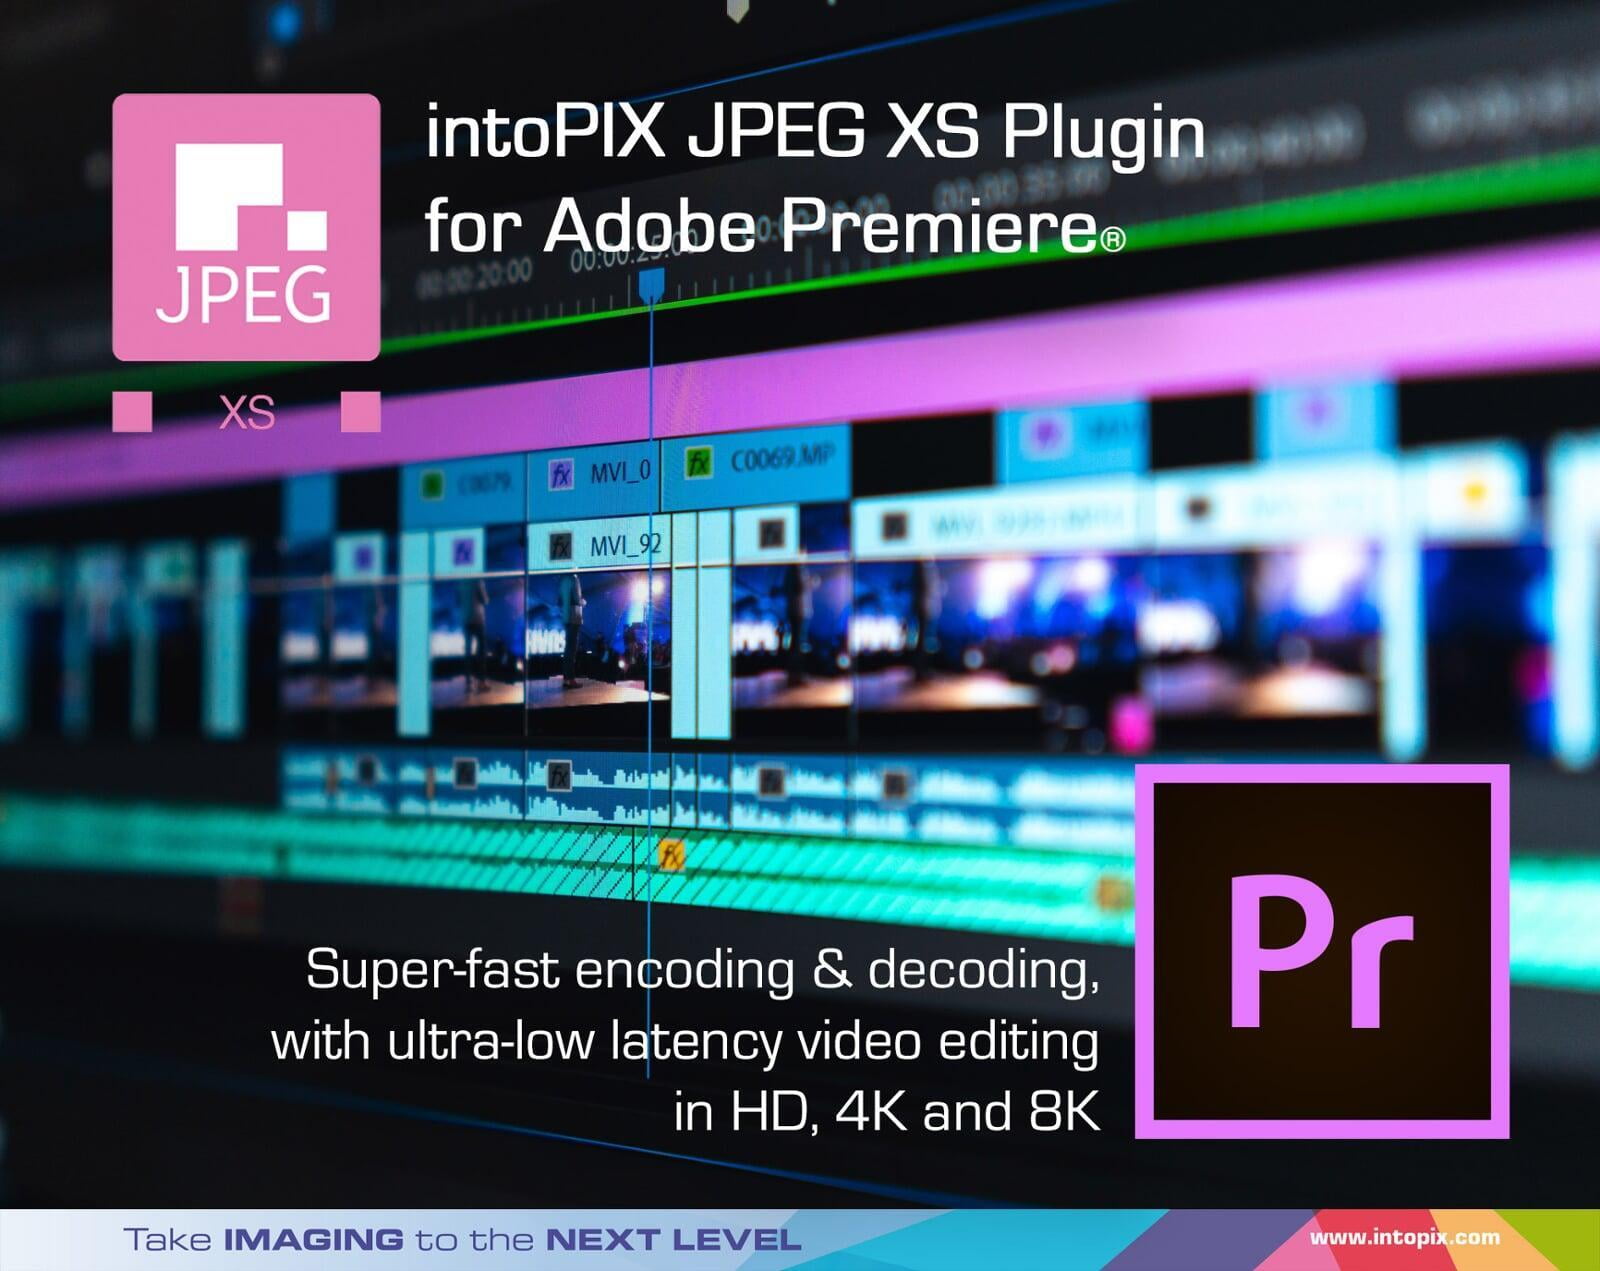 采用Adobe Premiere®的intoPIX JPEG  XS插件，简化你的live 视频工作流程。 